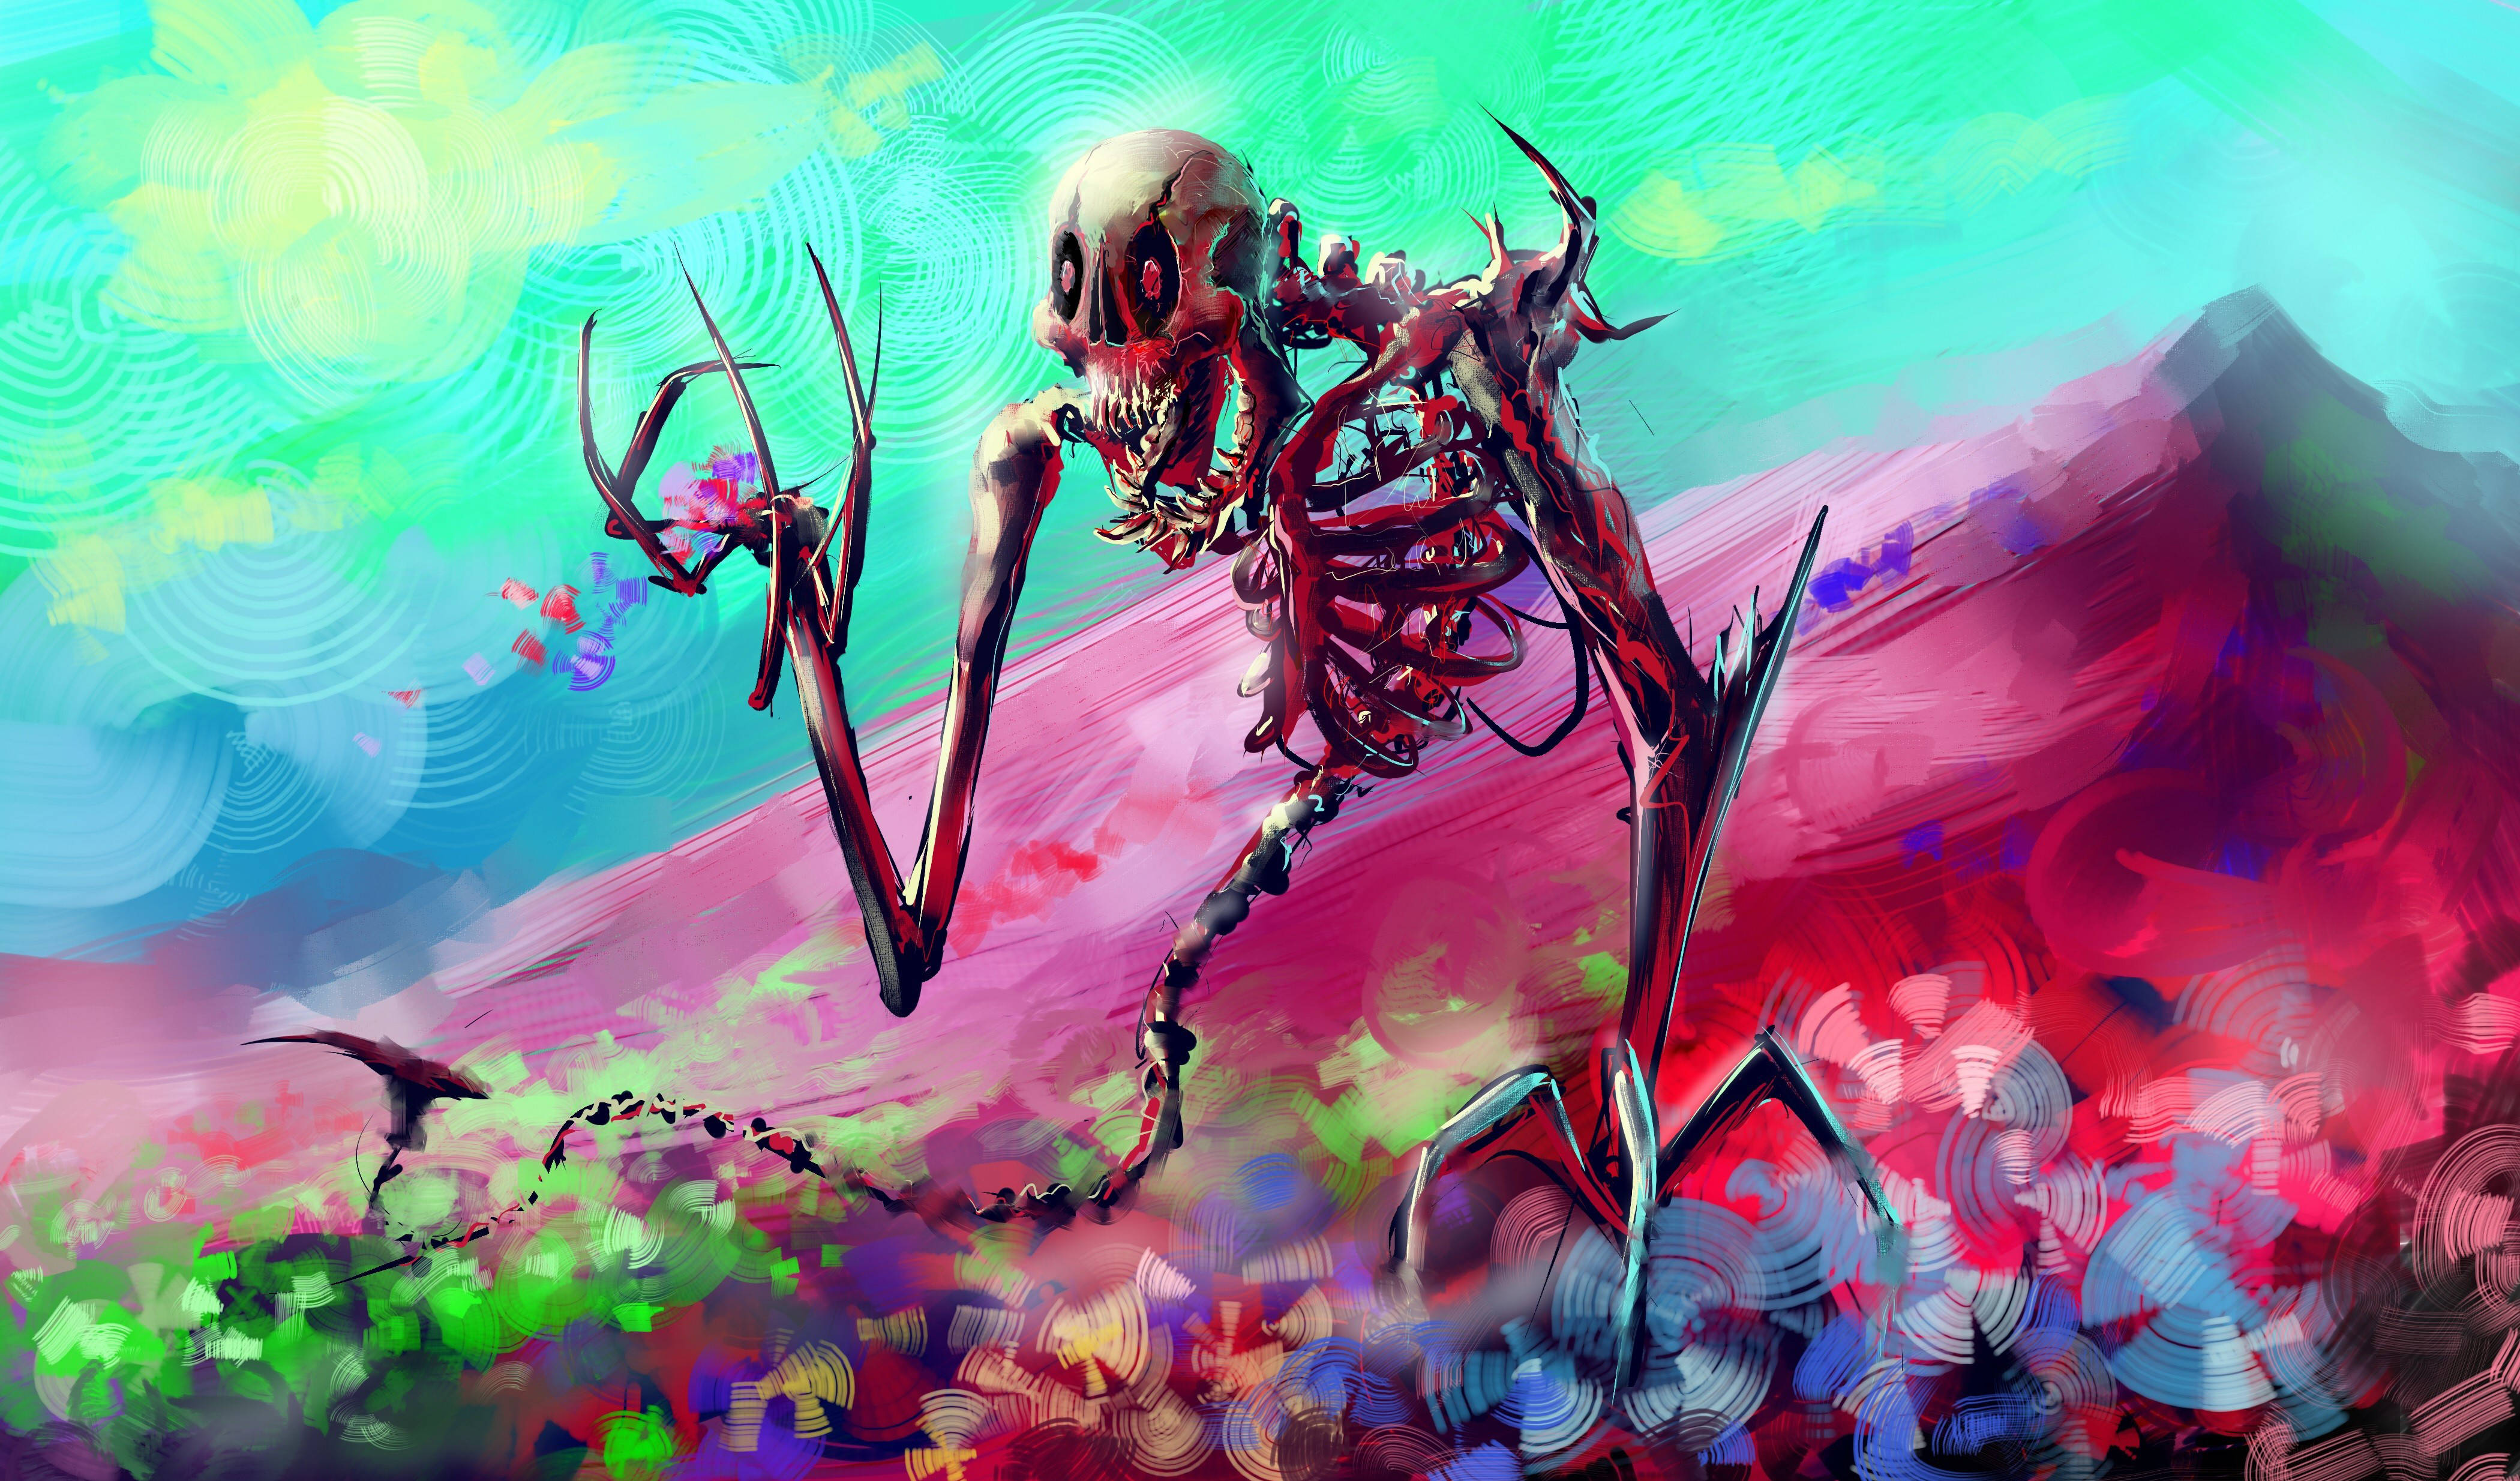 Vortigern Skeleton Painting Background